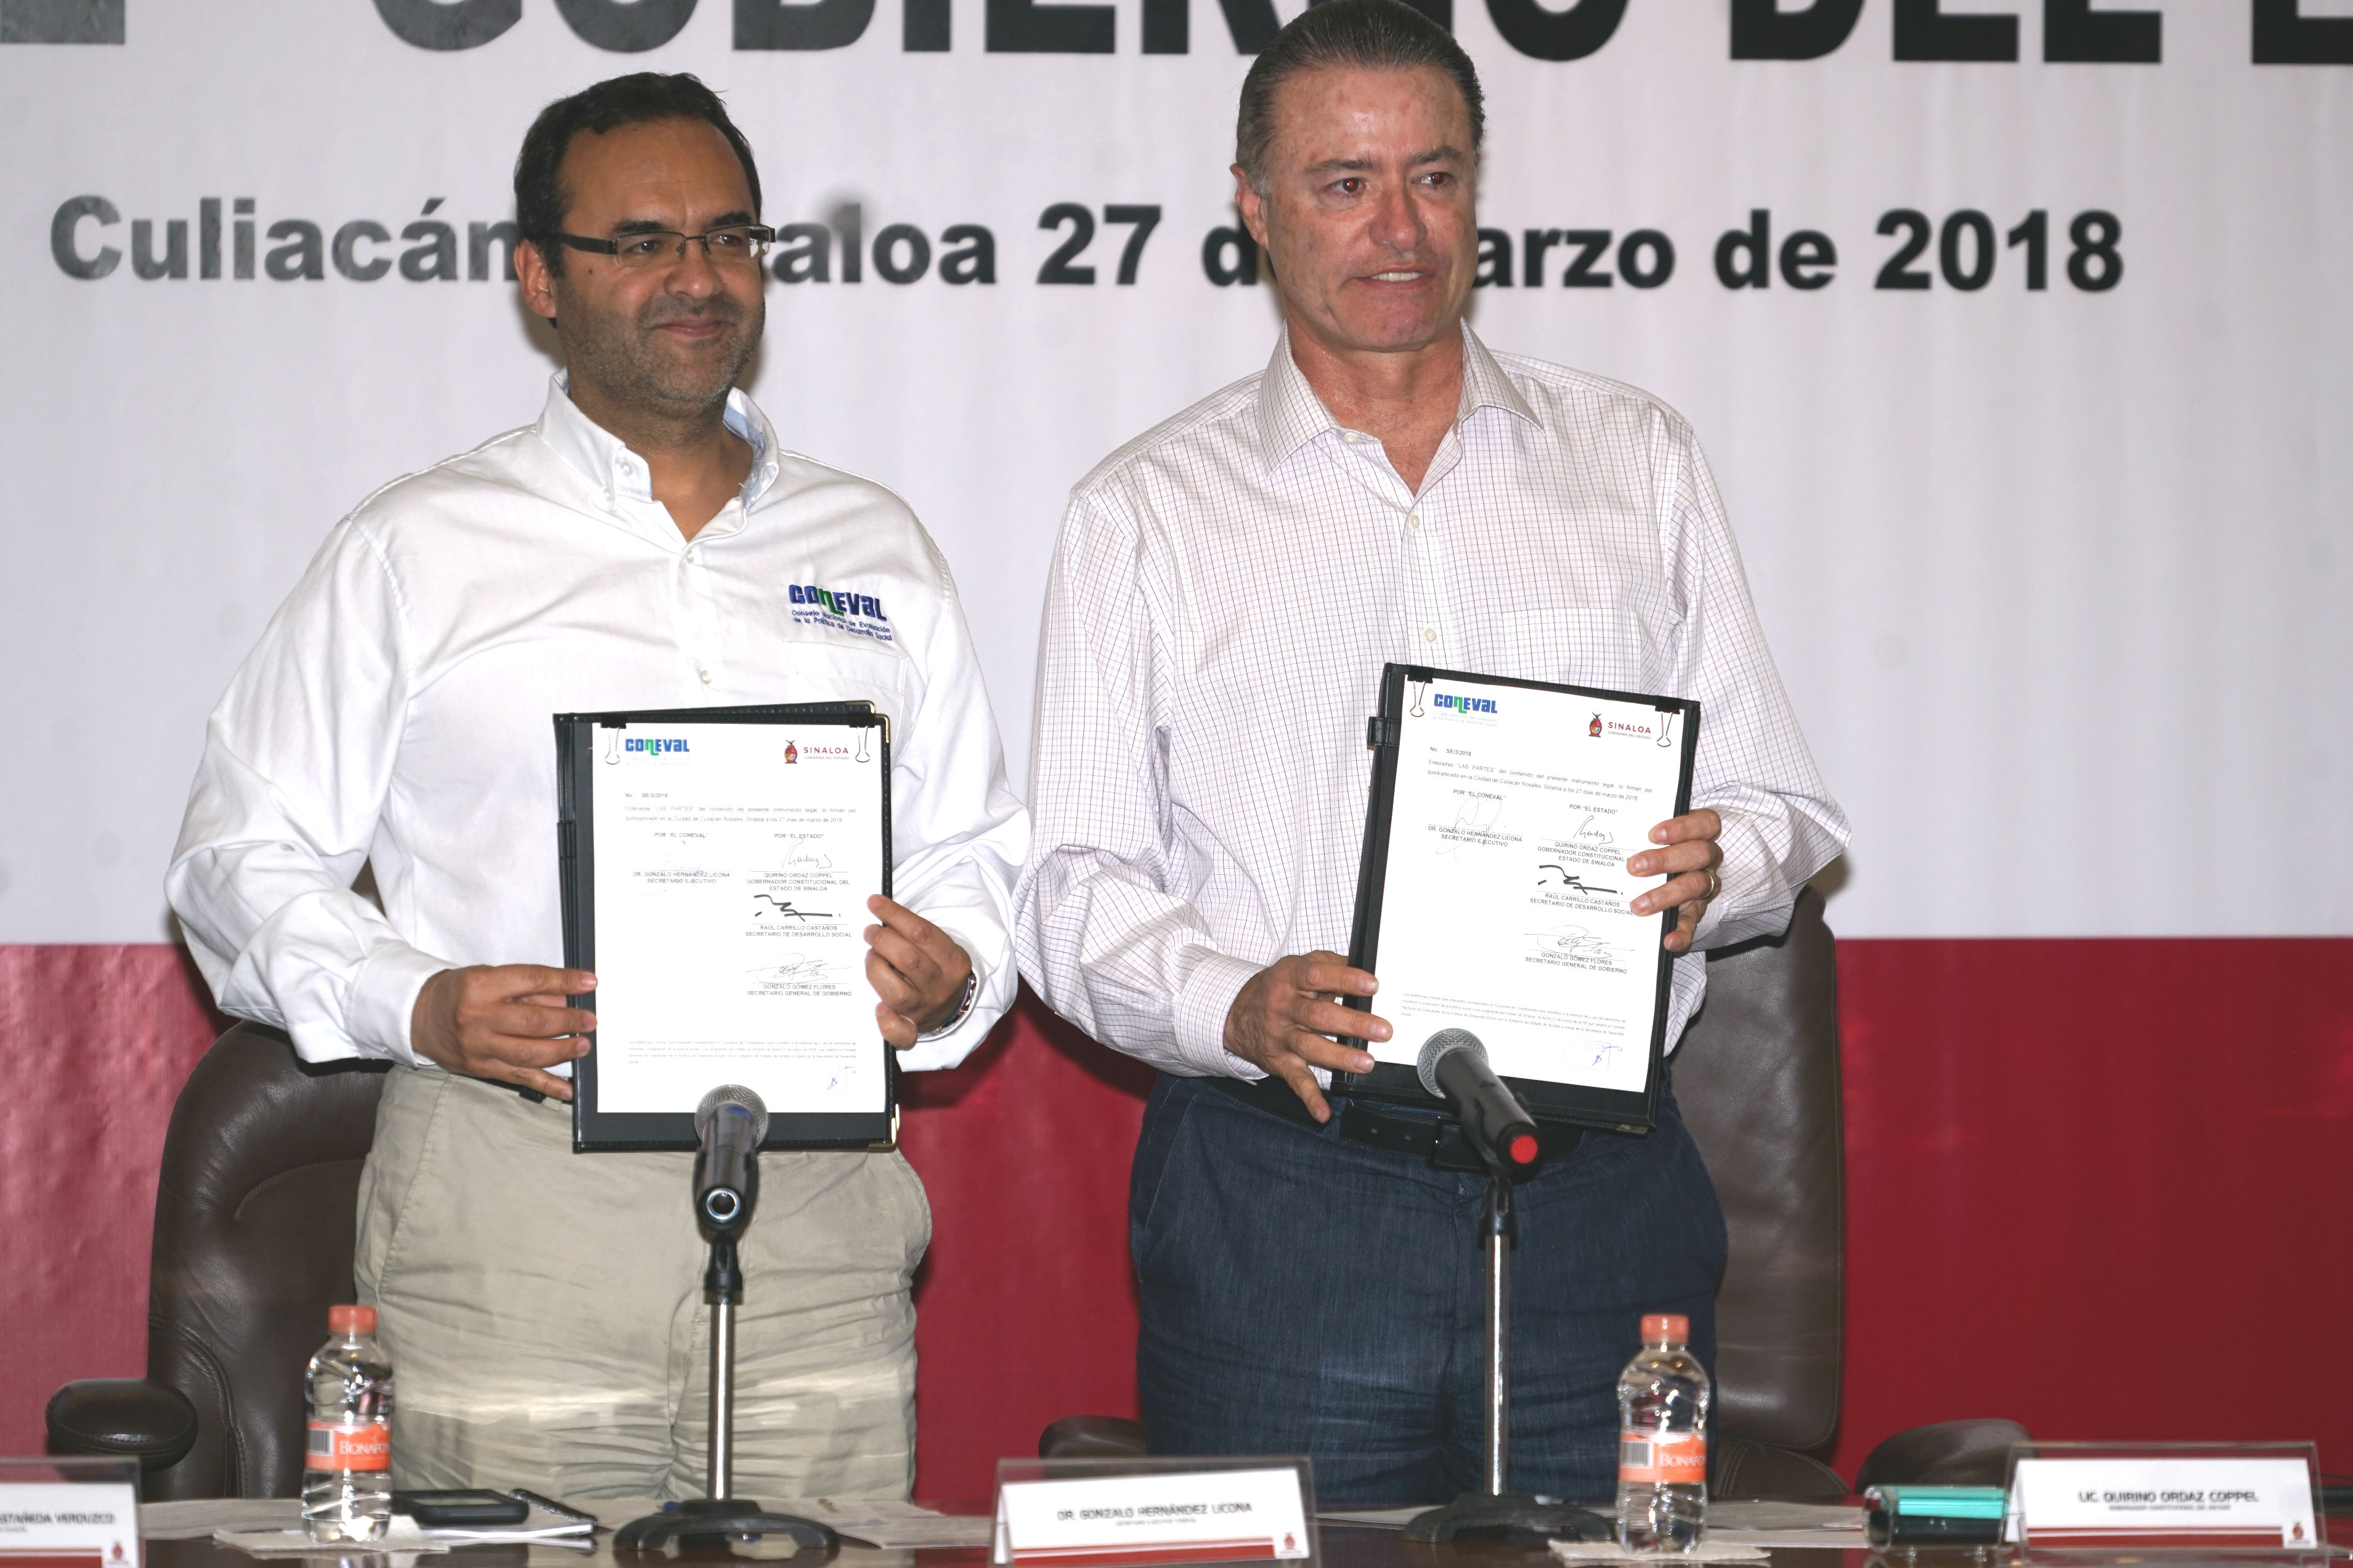 (Izquierda) Dr. Gonzalo Hernández Licona, secretario Ejecutivo del CONEVAL y (derecha) Quirino Ordaz Coppel, gobernador de Sinaloa, durante la firma de convenio de coordinación entre el CONEVAL y el gobierno de Sinaloa.